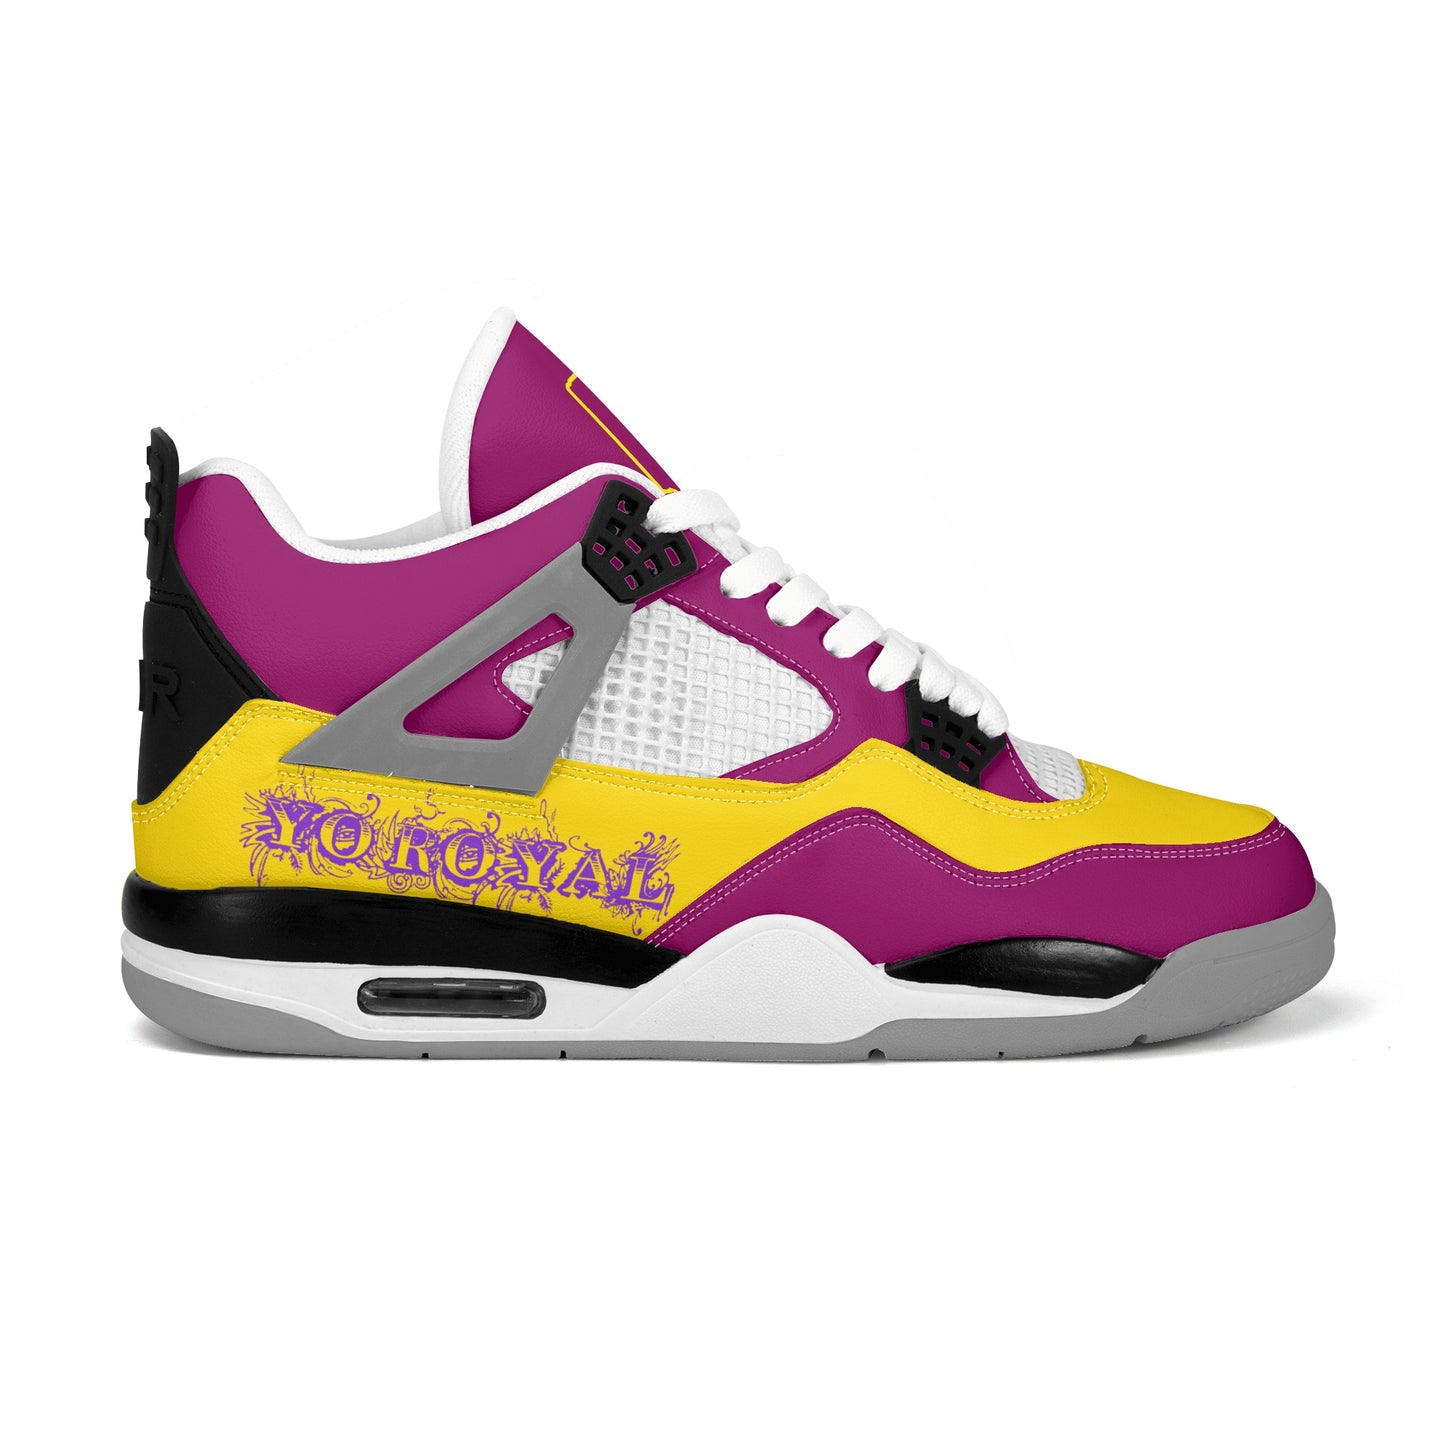 Mens Yo Royal Purple Yellow Sneakers